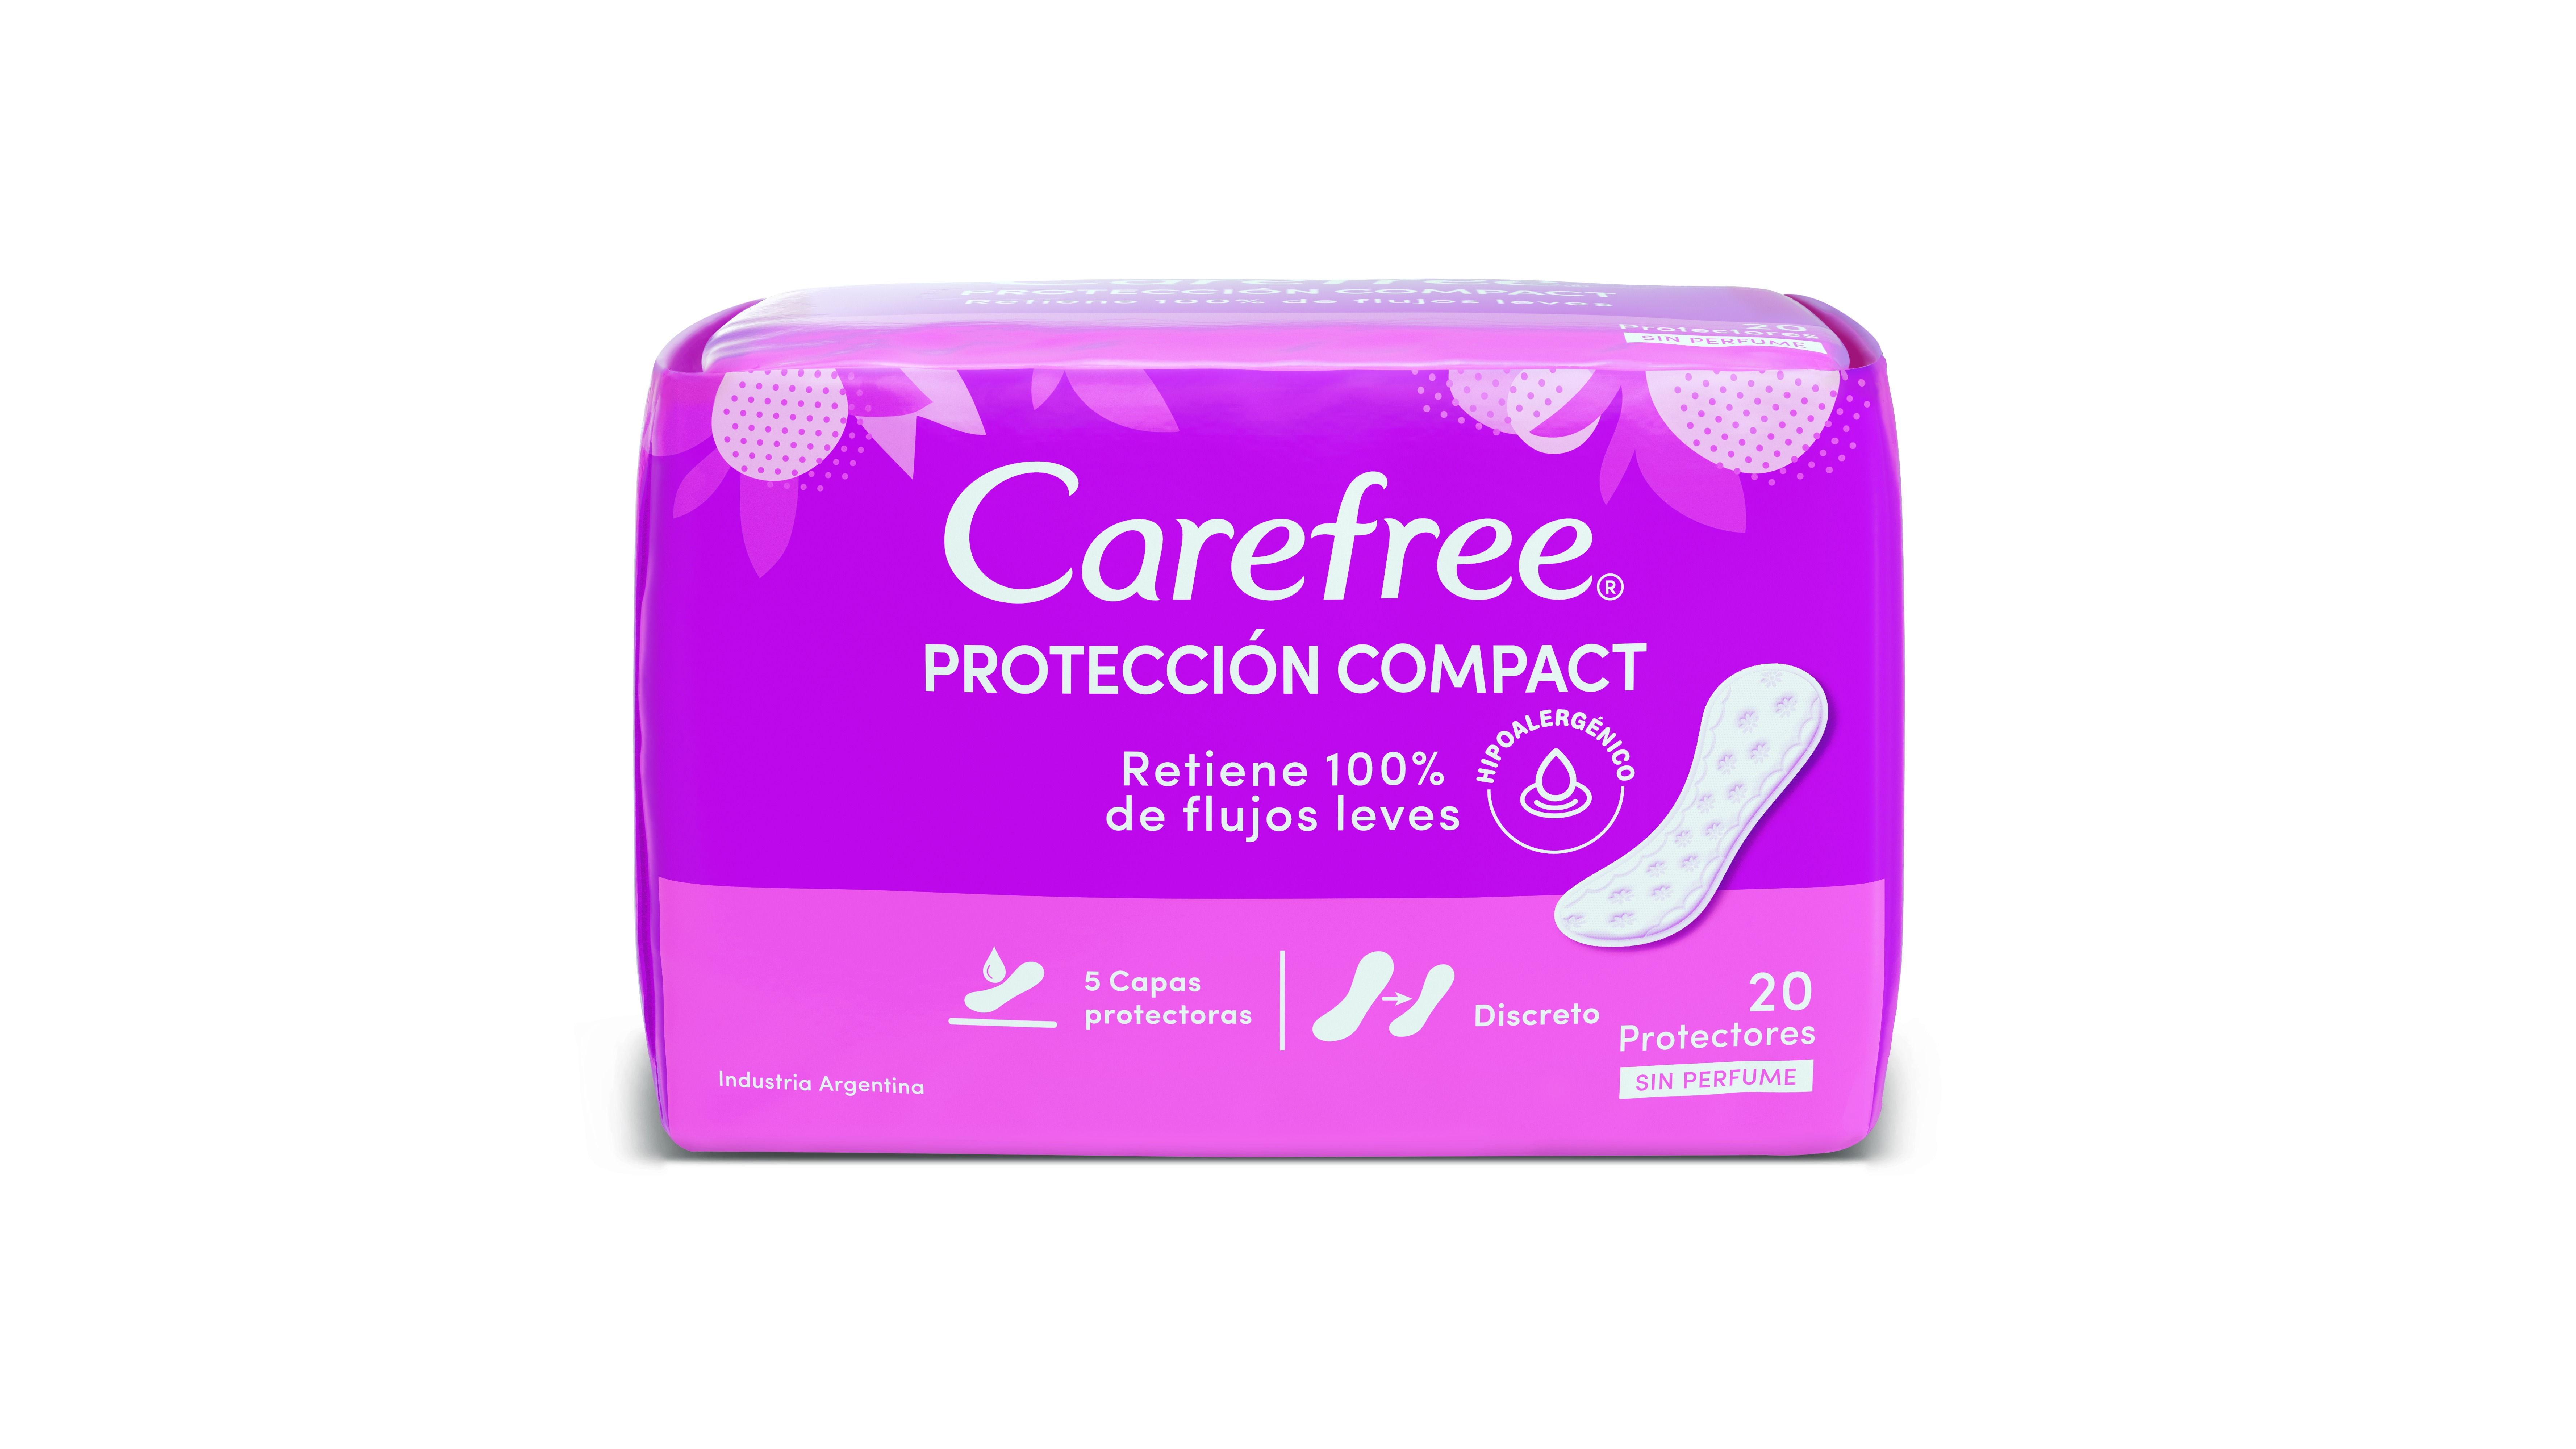 Carefree Proteccion Compact Protectores Diarios x 20 unid 